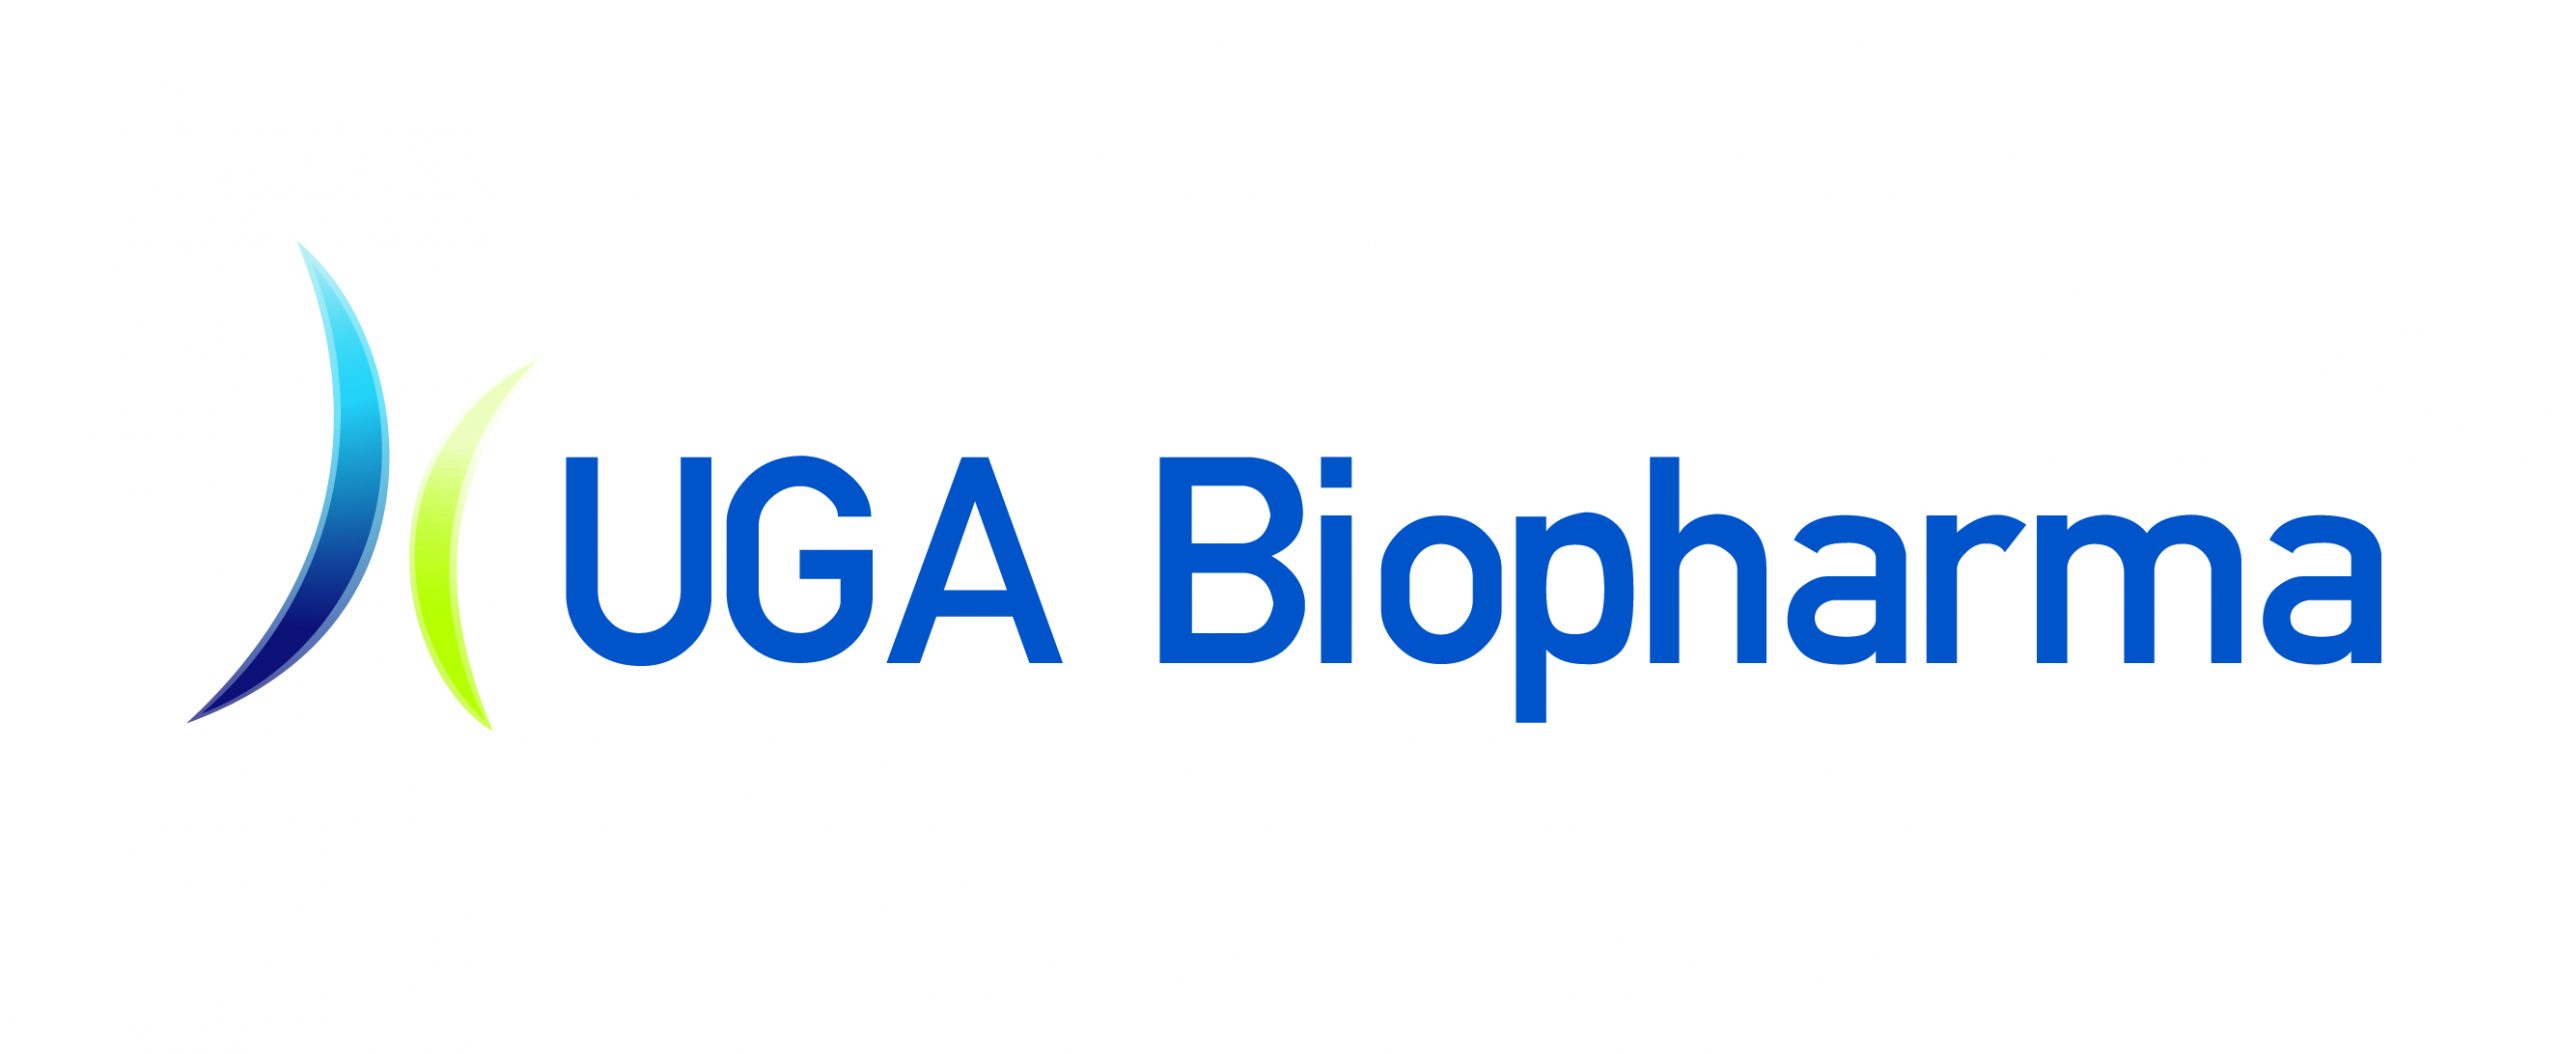 UGA Biopharma to debut at digital Bioprocessing Summit Europe